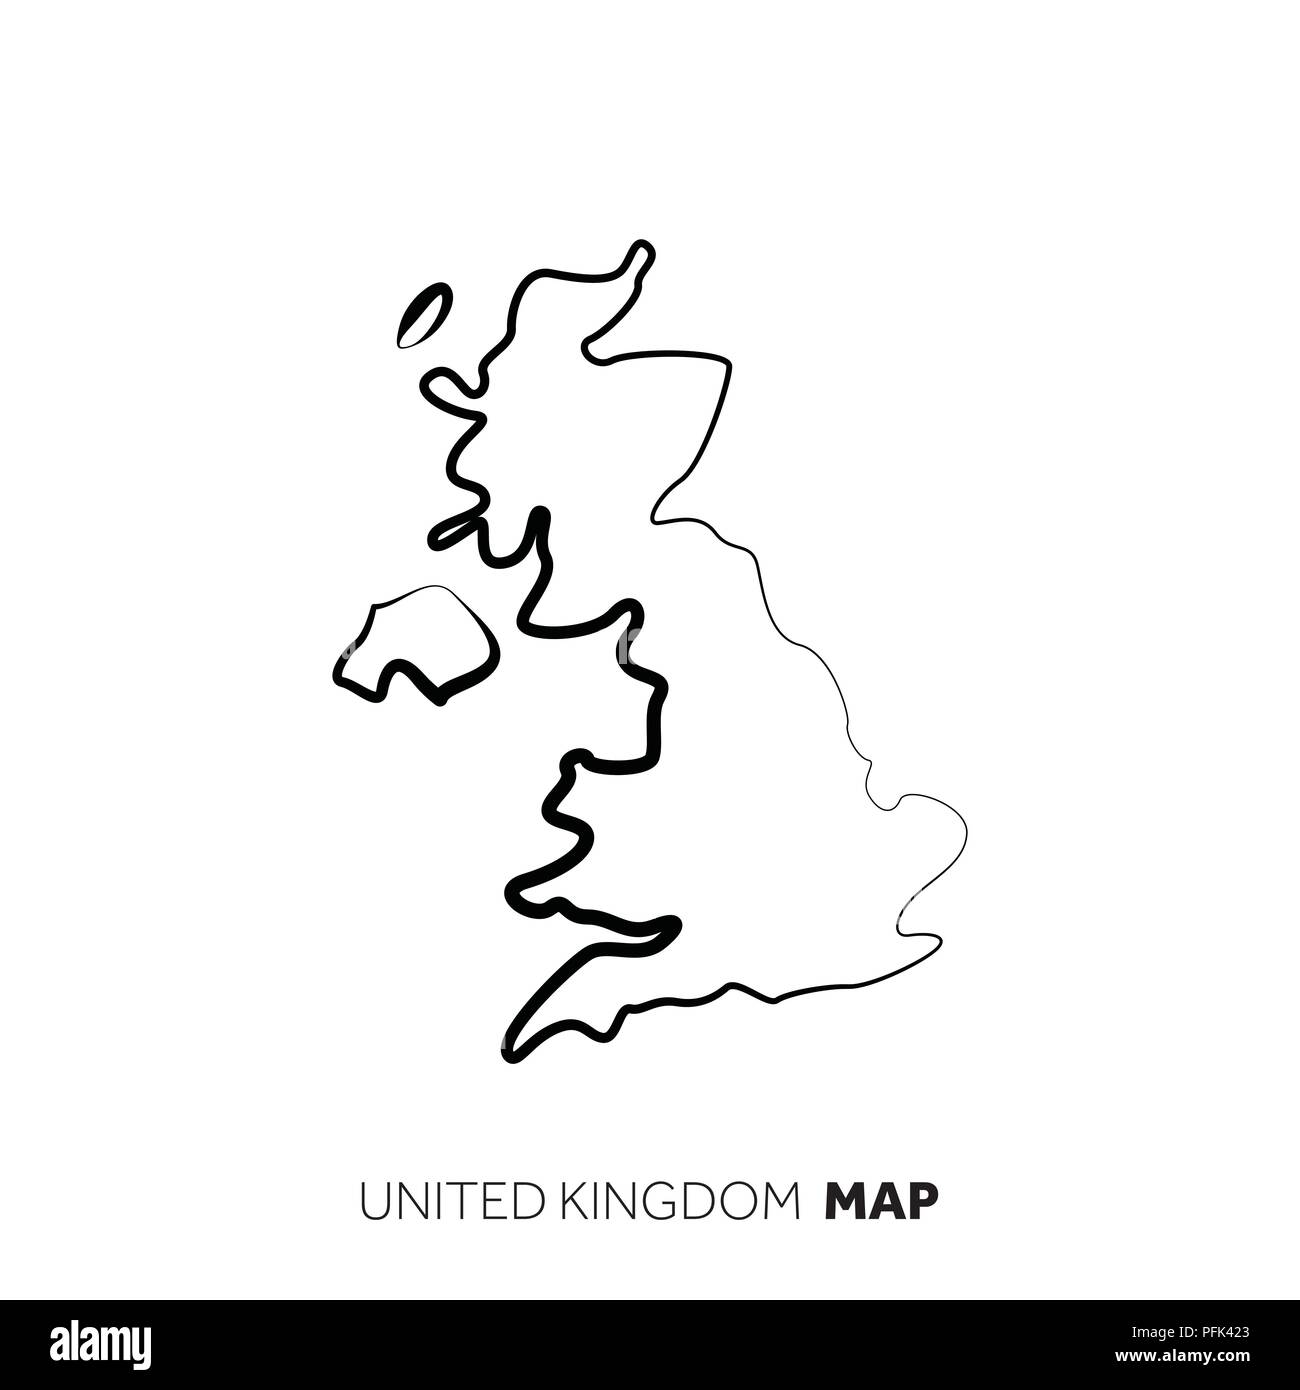 Vereinigtes Königreich vektor Land Karte skizzieren. Schwarze Linie auf weißem Hintergrund Stock Vektor